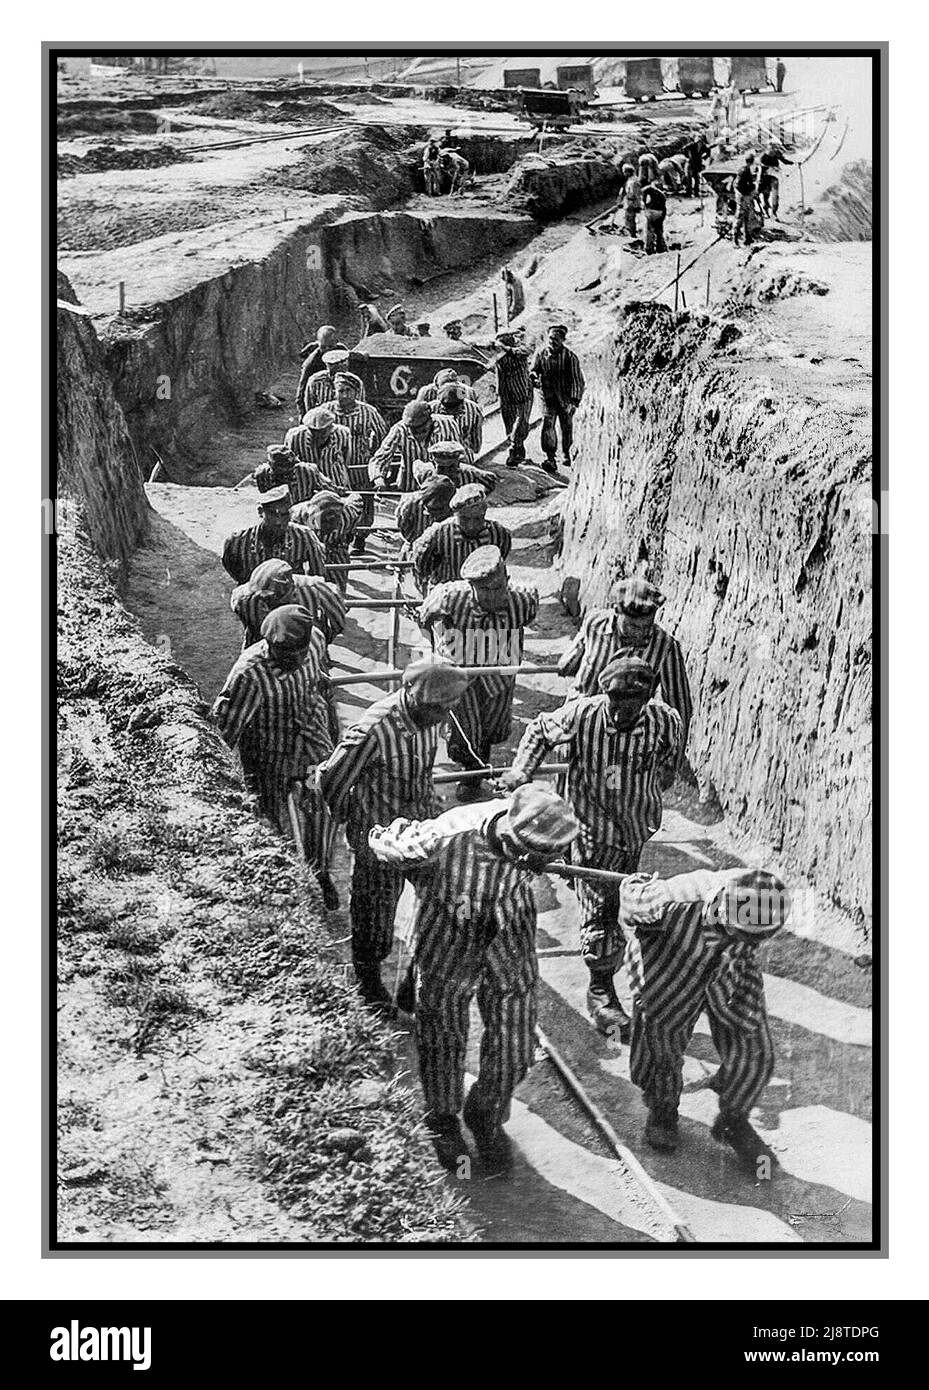 Camp de la mort allemand nazi Mauthausen-Gusen (1938-1945) en Autriche. Prisonniers dans la carrière (escalier de la mort). Les prisonniers ont été contraints de transporter de la terre et des blocs de granit géants afin de fournir des tunnels souterrains sous la ville de Sankt Georgen an der Gusen ; un tel travail dur forcé était comme une torture. L'armée américaine a libéré ce camp de la mort et tiré sur le commandant du camp Franz Ziereis. Banque D'Images